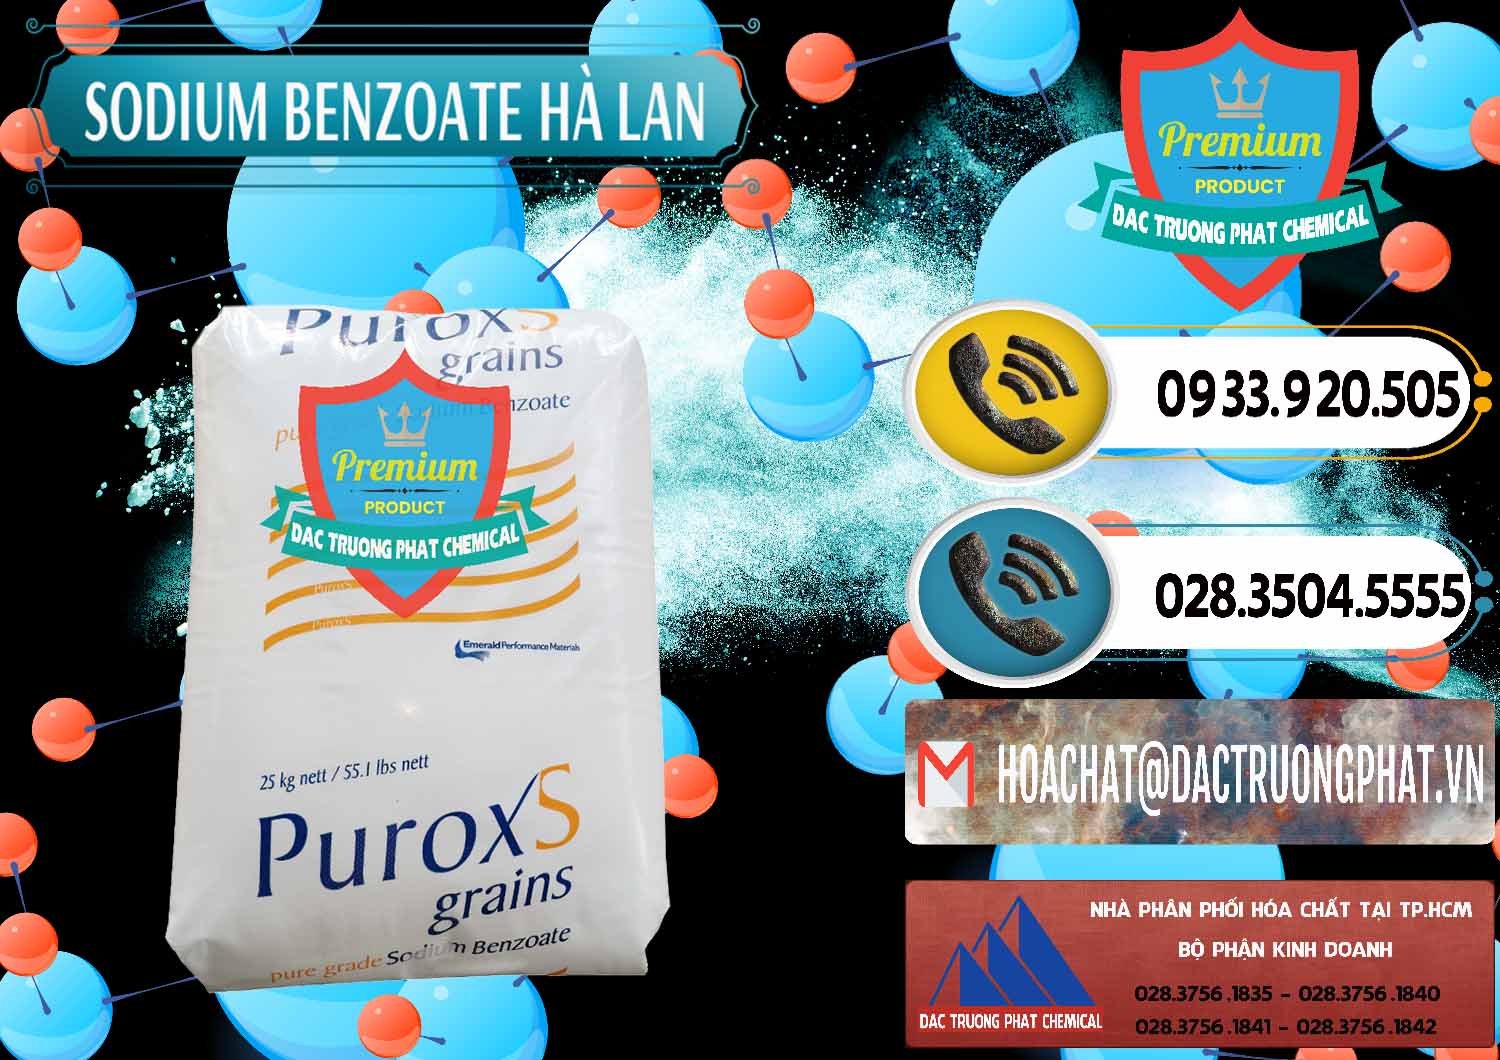 Đơn vị chuyên phân phối & bán Sodium Benzoate - Mốc Bột Puroxs Hà Lan Netherlands - 0467 - Nơi cung cấp _ phân phối hóa chất tại TP.HCM - hoachatdetnhuom.vn